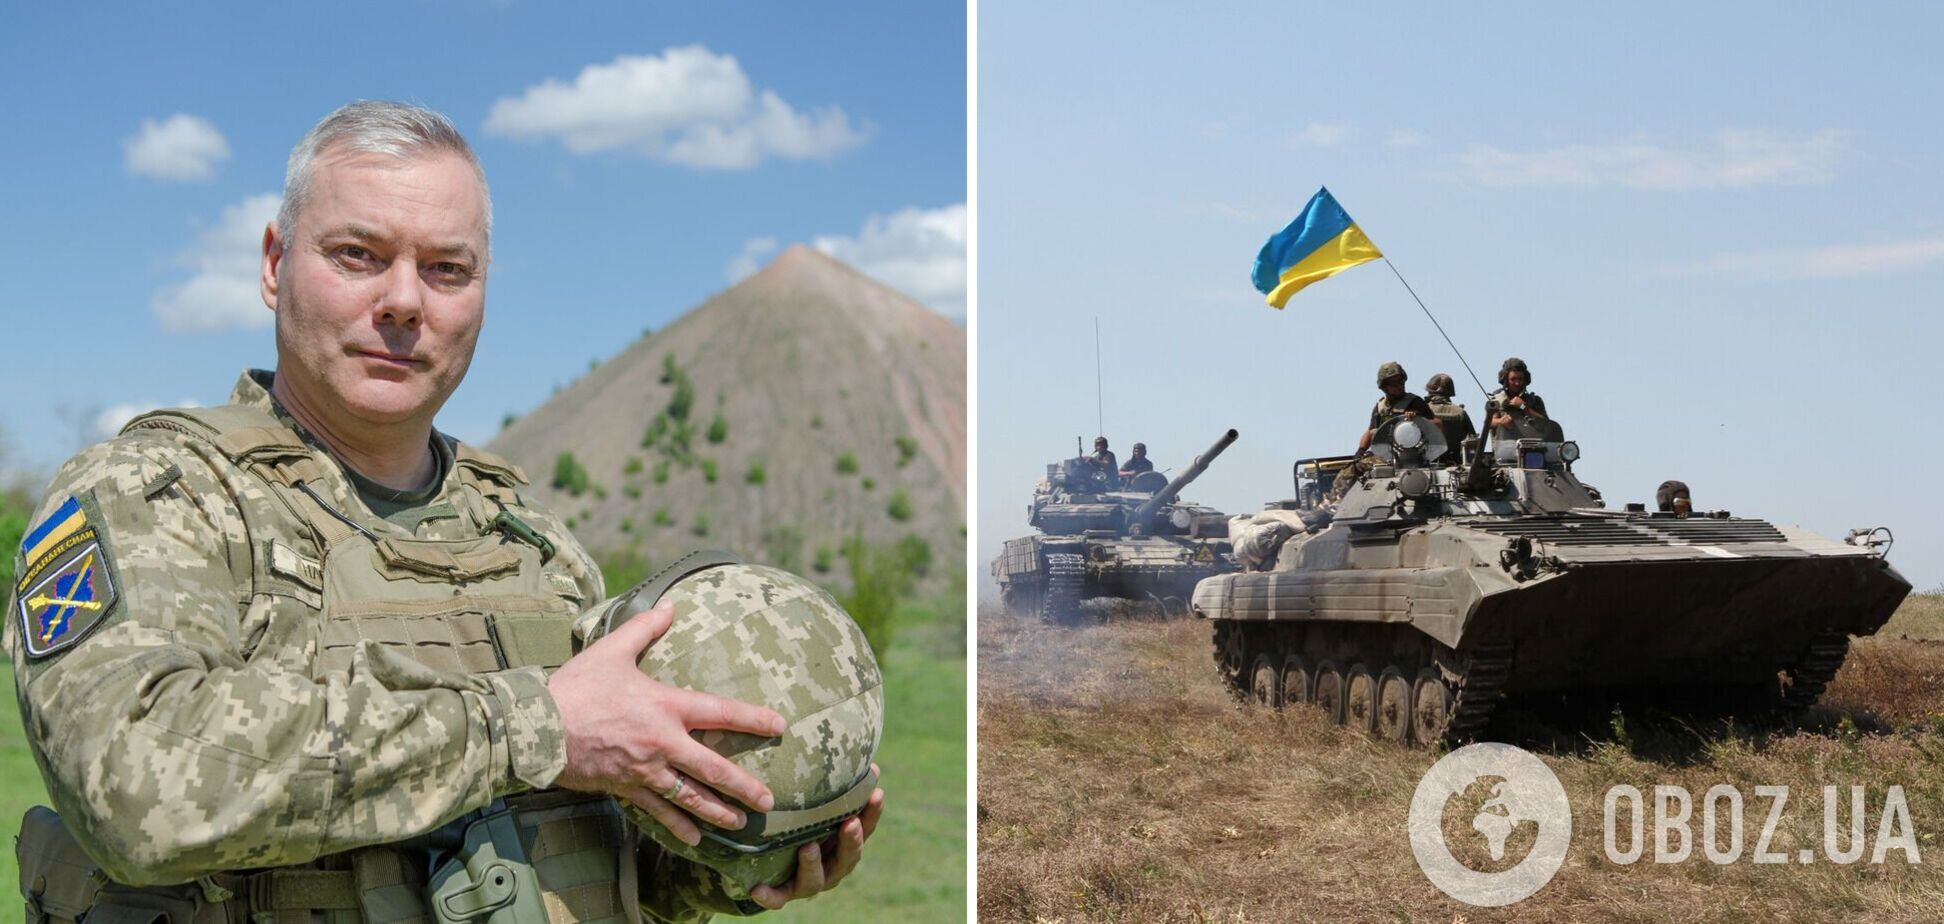 Наєв: подвиги українських воїнів унеможливлюють просування ворога. Відео